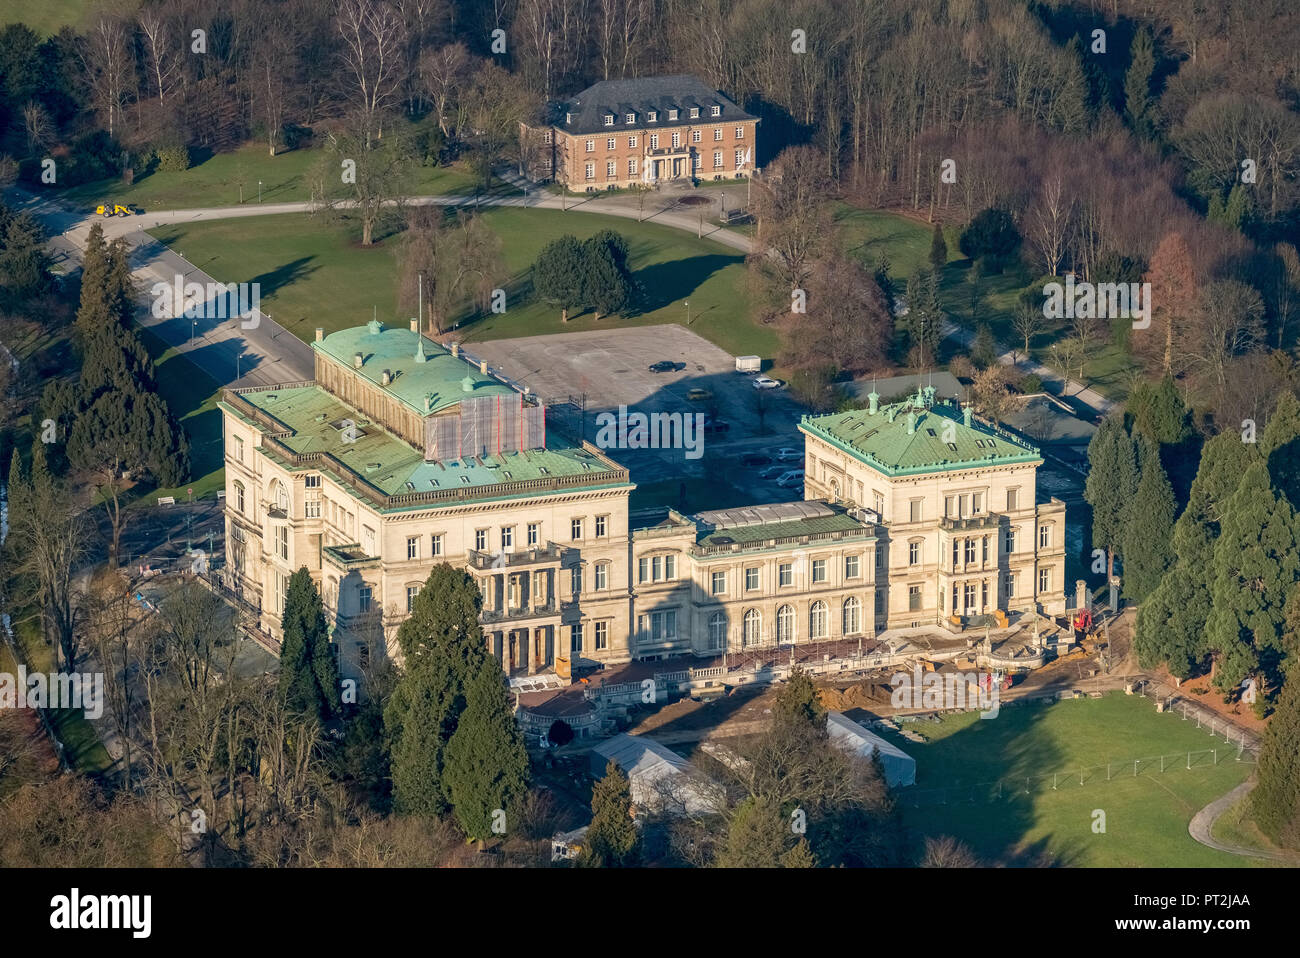 Villa Hügel wurde gerade renoviert, Krupp-Villa, Denkmalschutz, Essen, Ruhrgebiet, Nordrhein-Westfalen, Deutschland Stockfoto